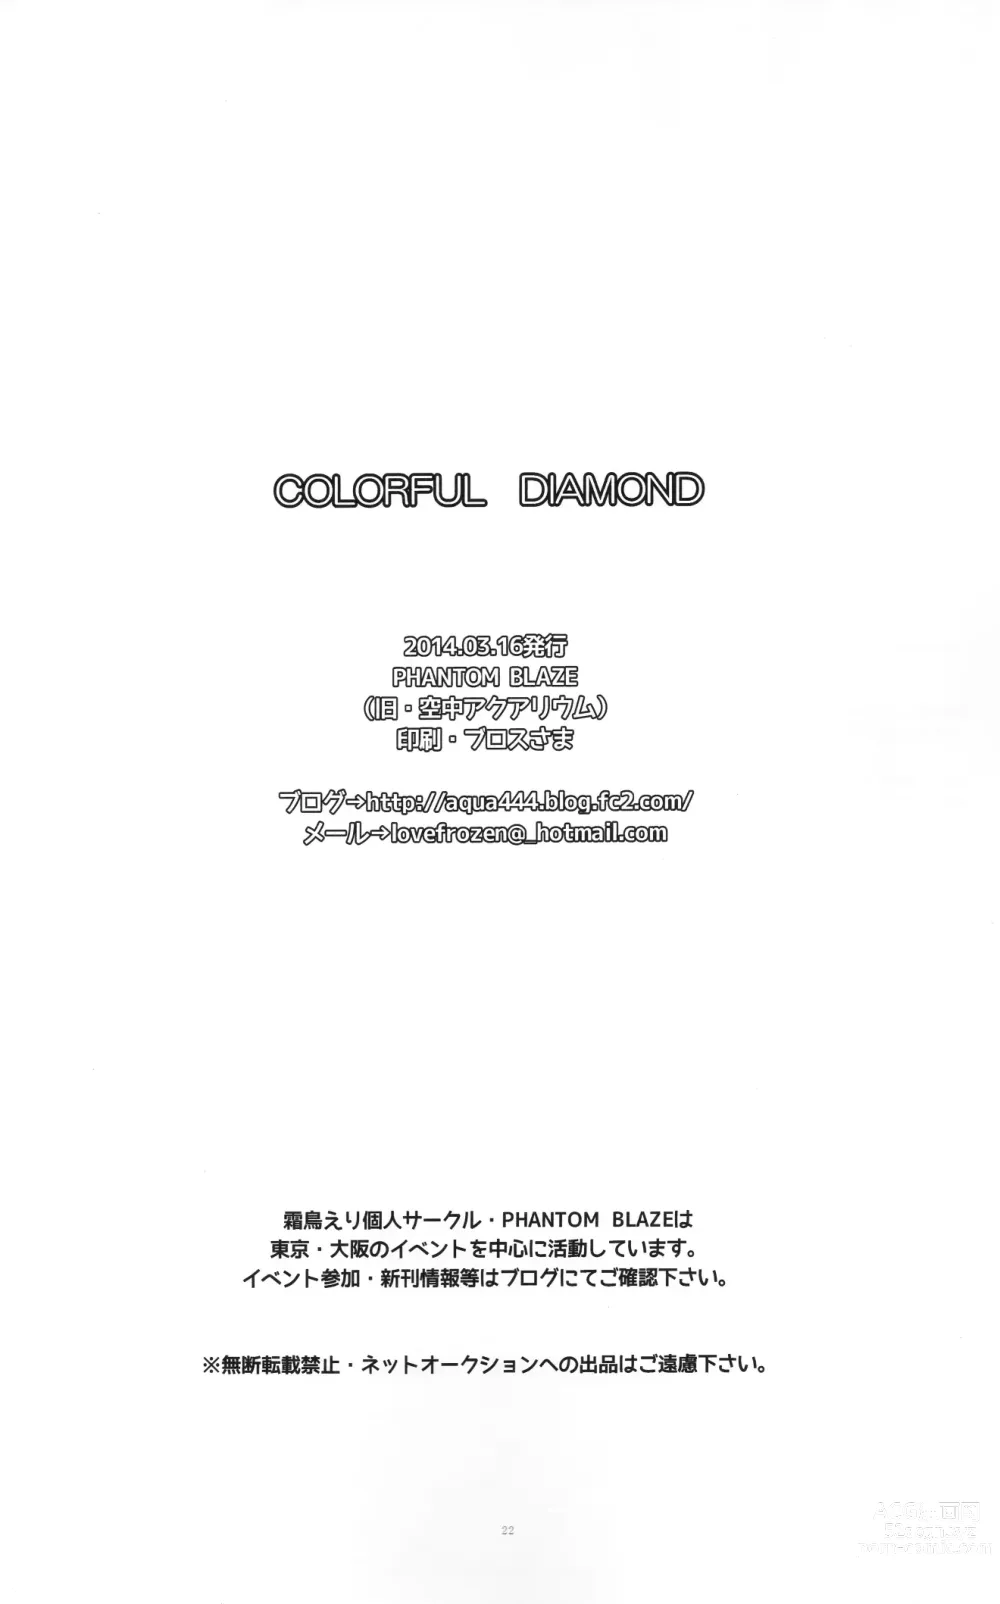 Page 21 of doujinshi COLORFUL DIAMOND